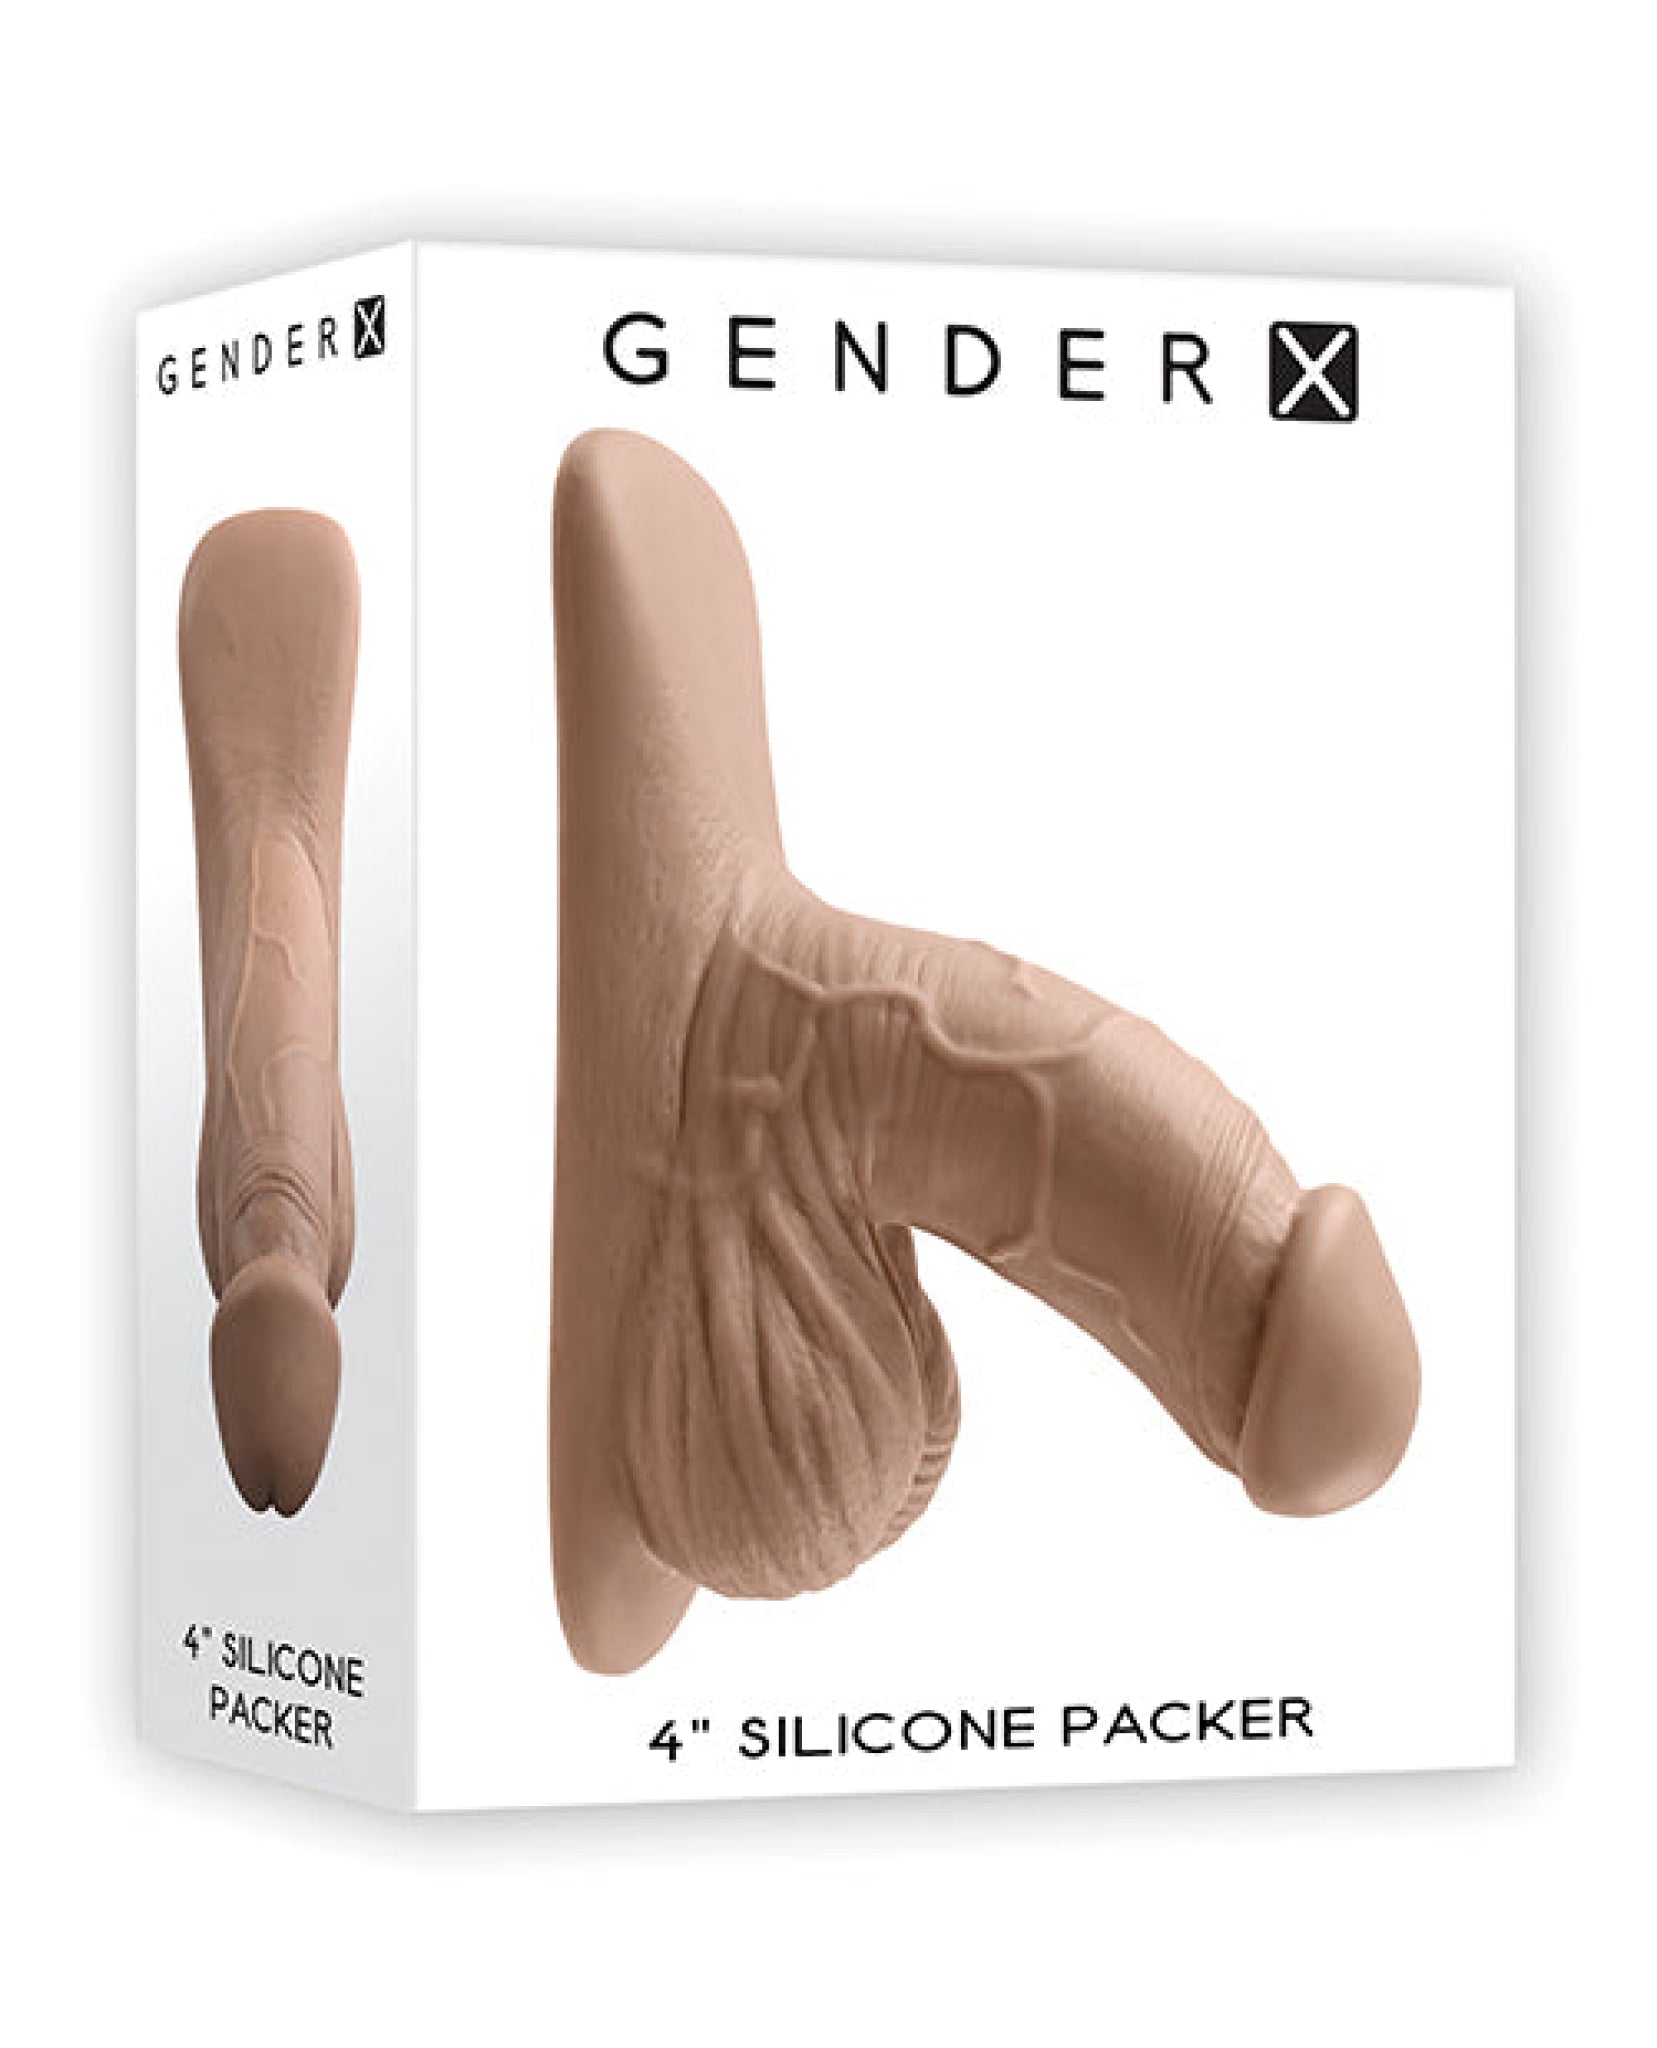 Gender X 4" Silicone Packer Gender X